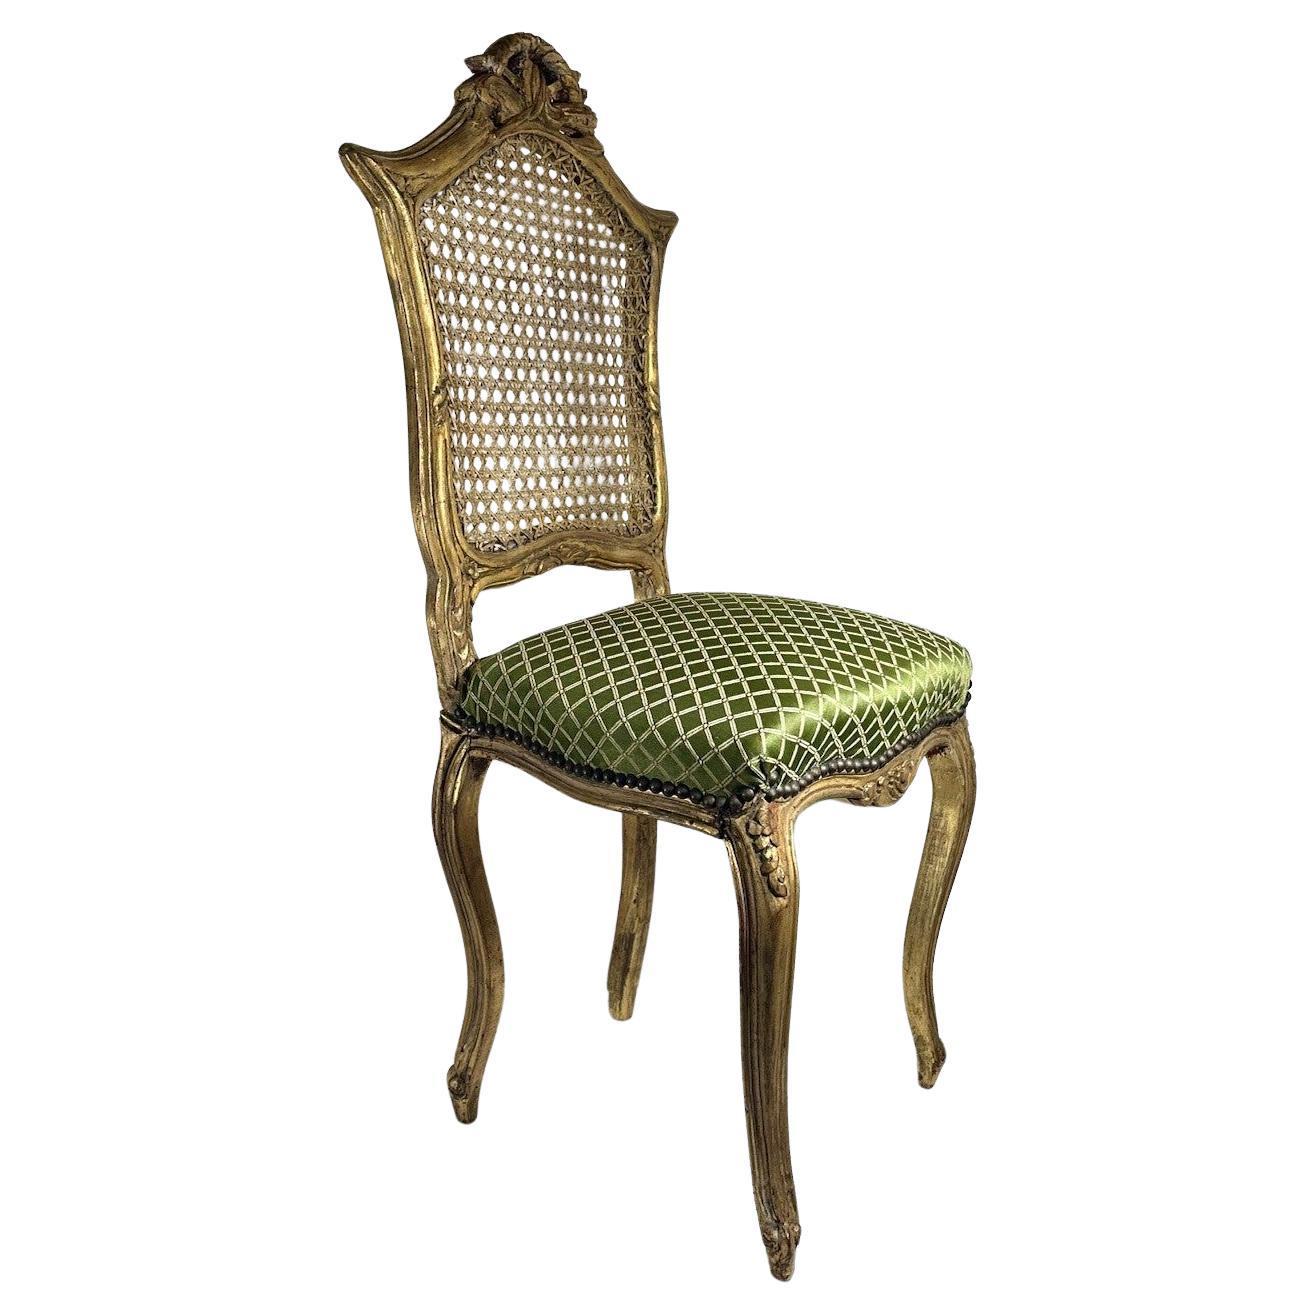 Chaise cannée en bois doré de style rococo avec assise tapissée, chaise d'appoint.

Cette petite chaise reposant sur des pieds cabriole est dotée d'un dossier canné complété par une assise tapissée en vert avec un motif de treillis doré. L'état est